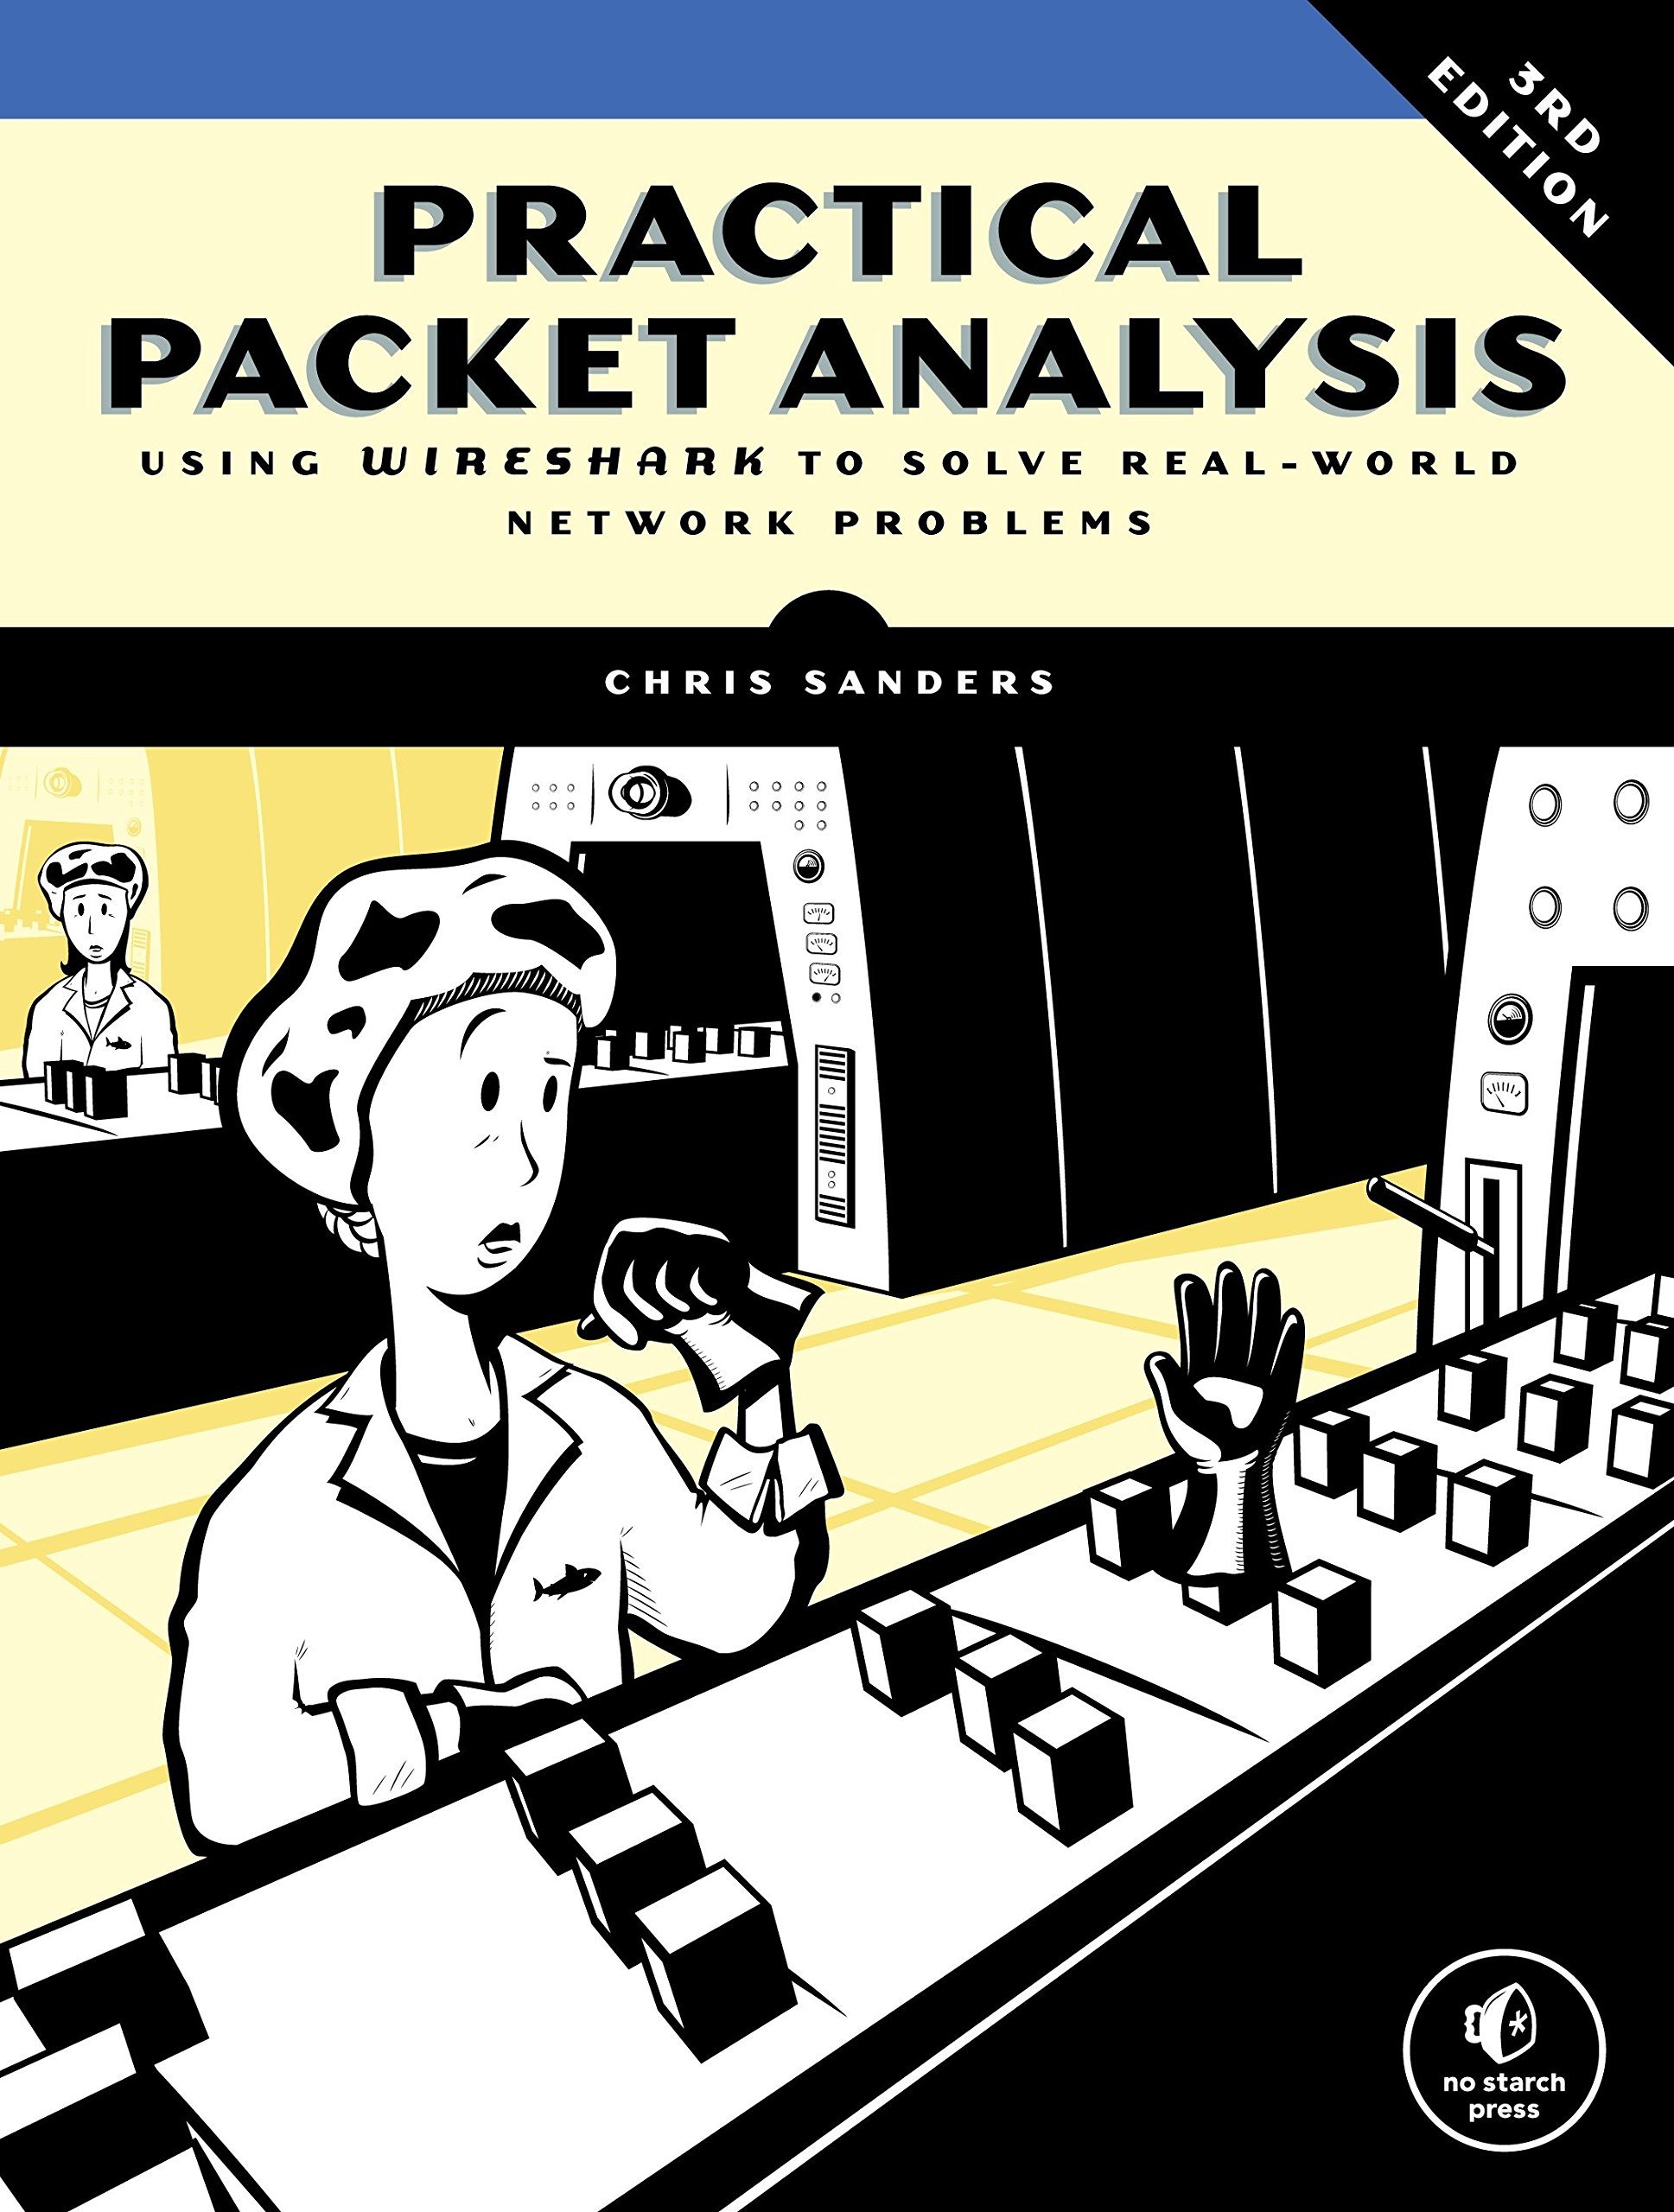 Chris Sanders: Practical Packet Analysis